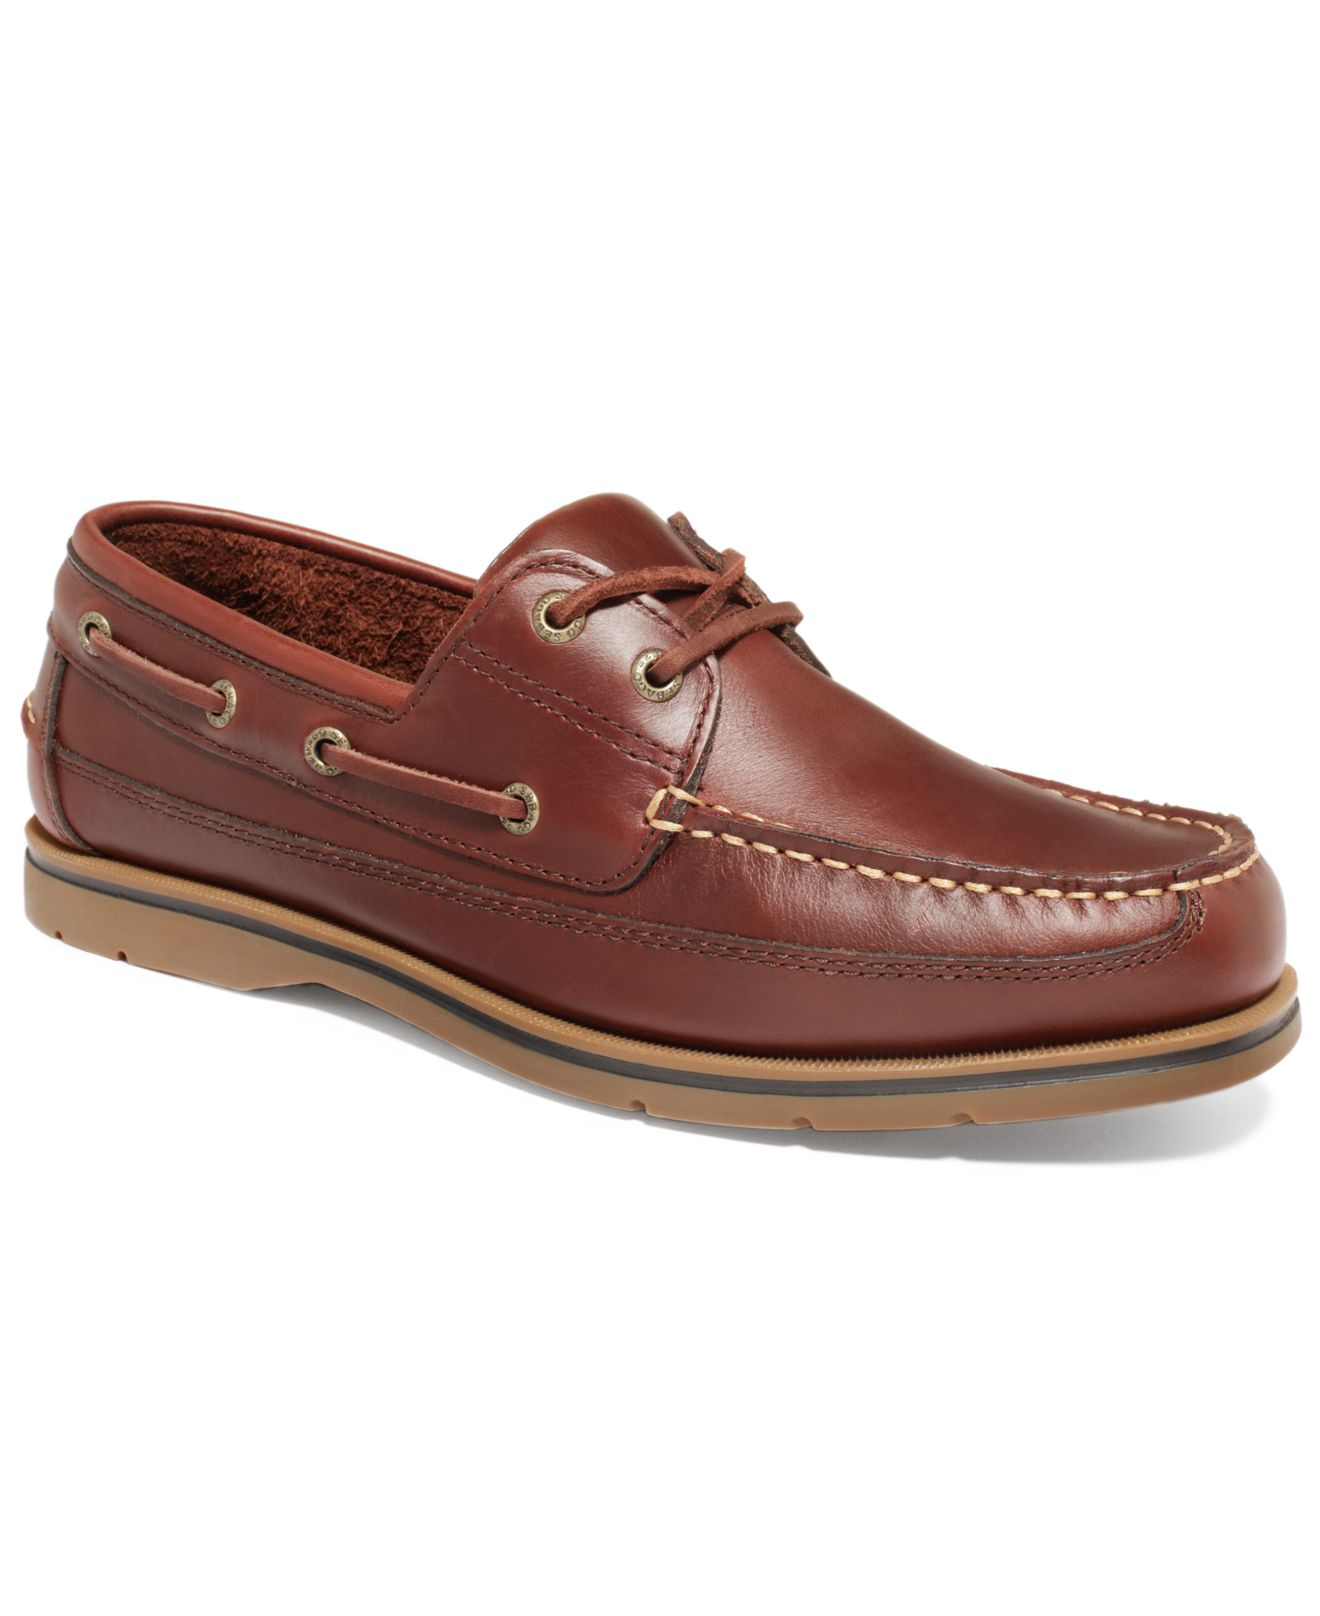 Sebago Grinder Boat Shoes in Brown for Men - Lyst